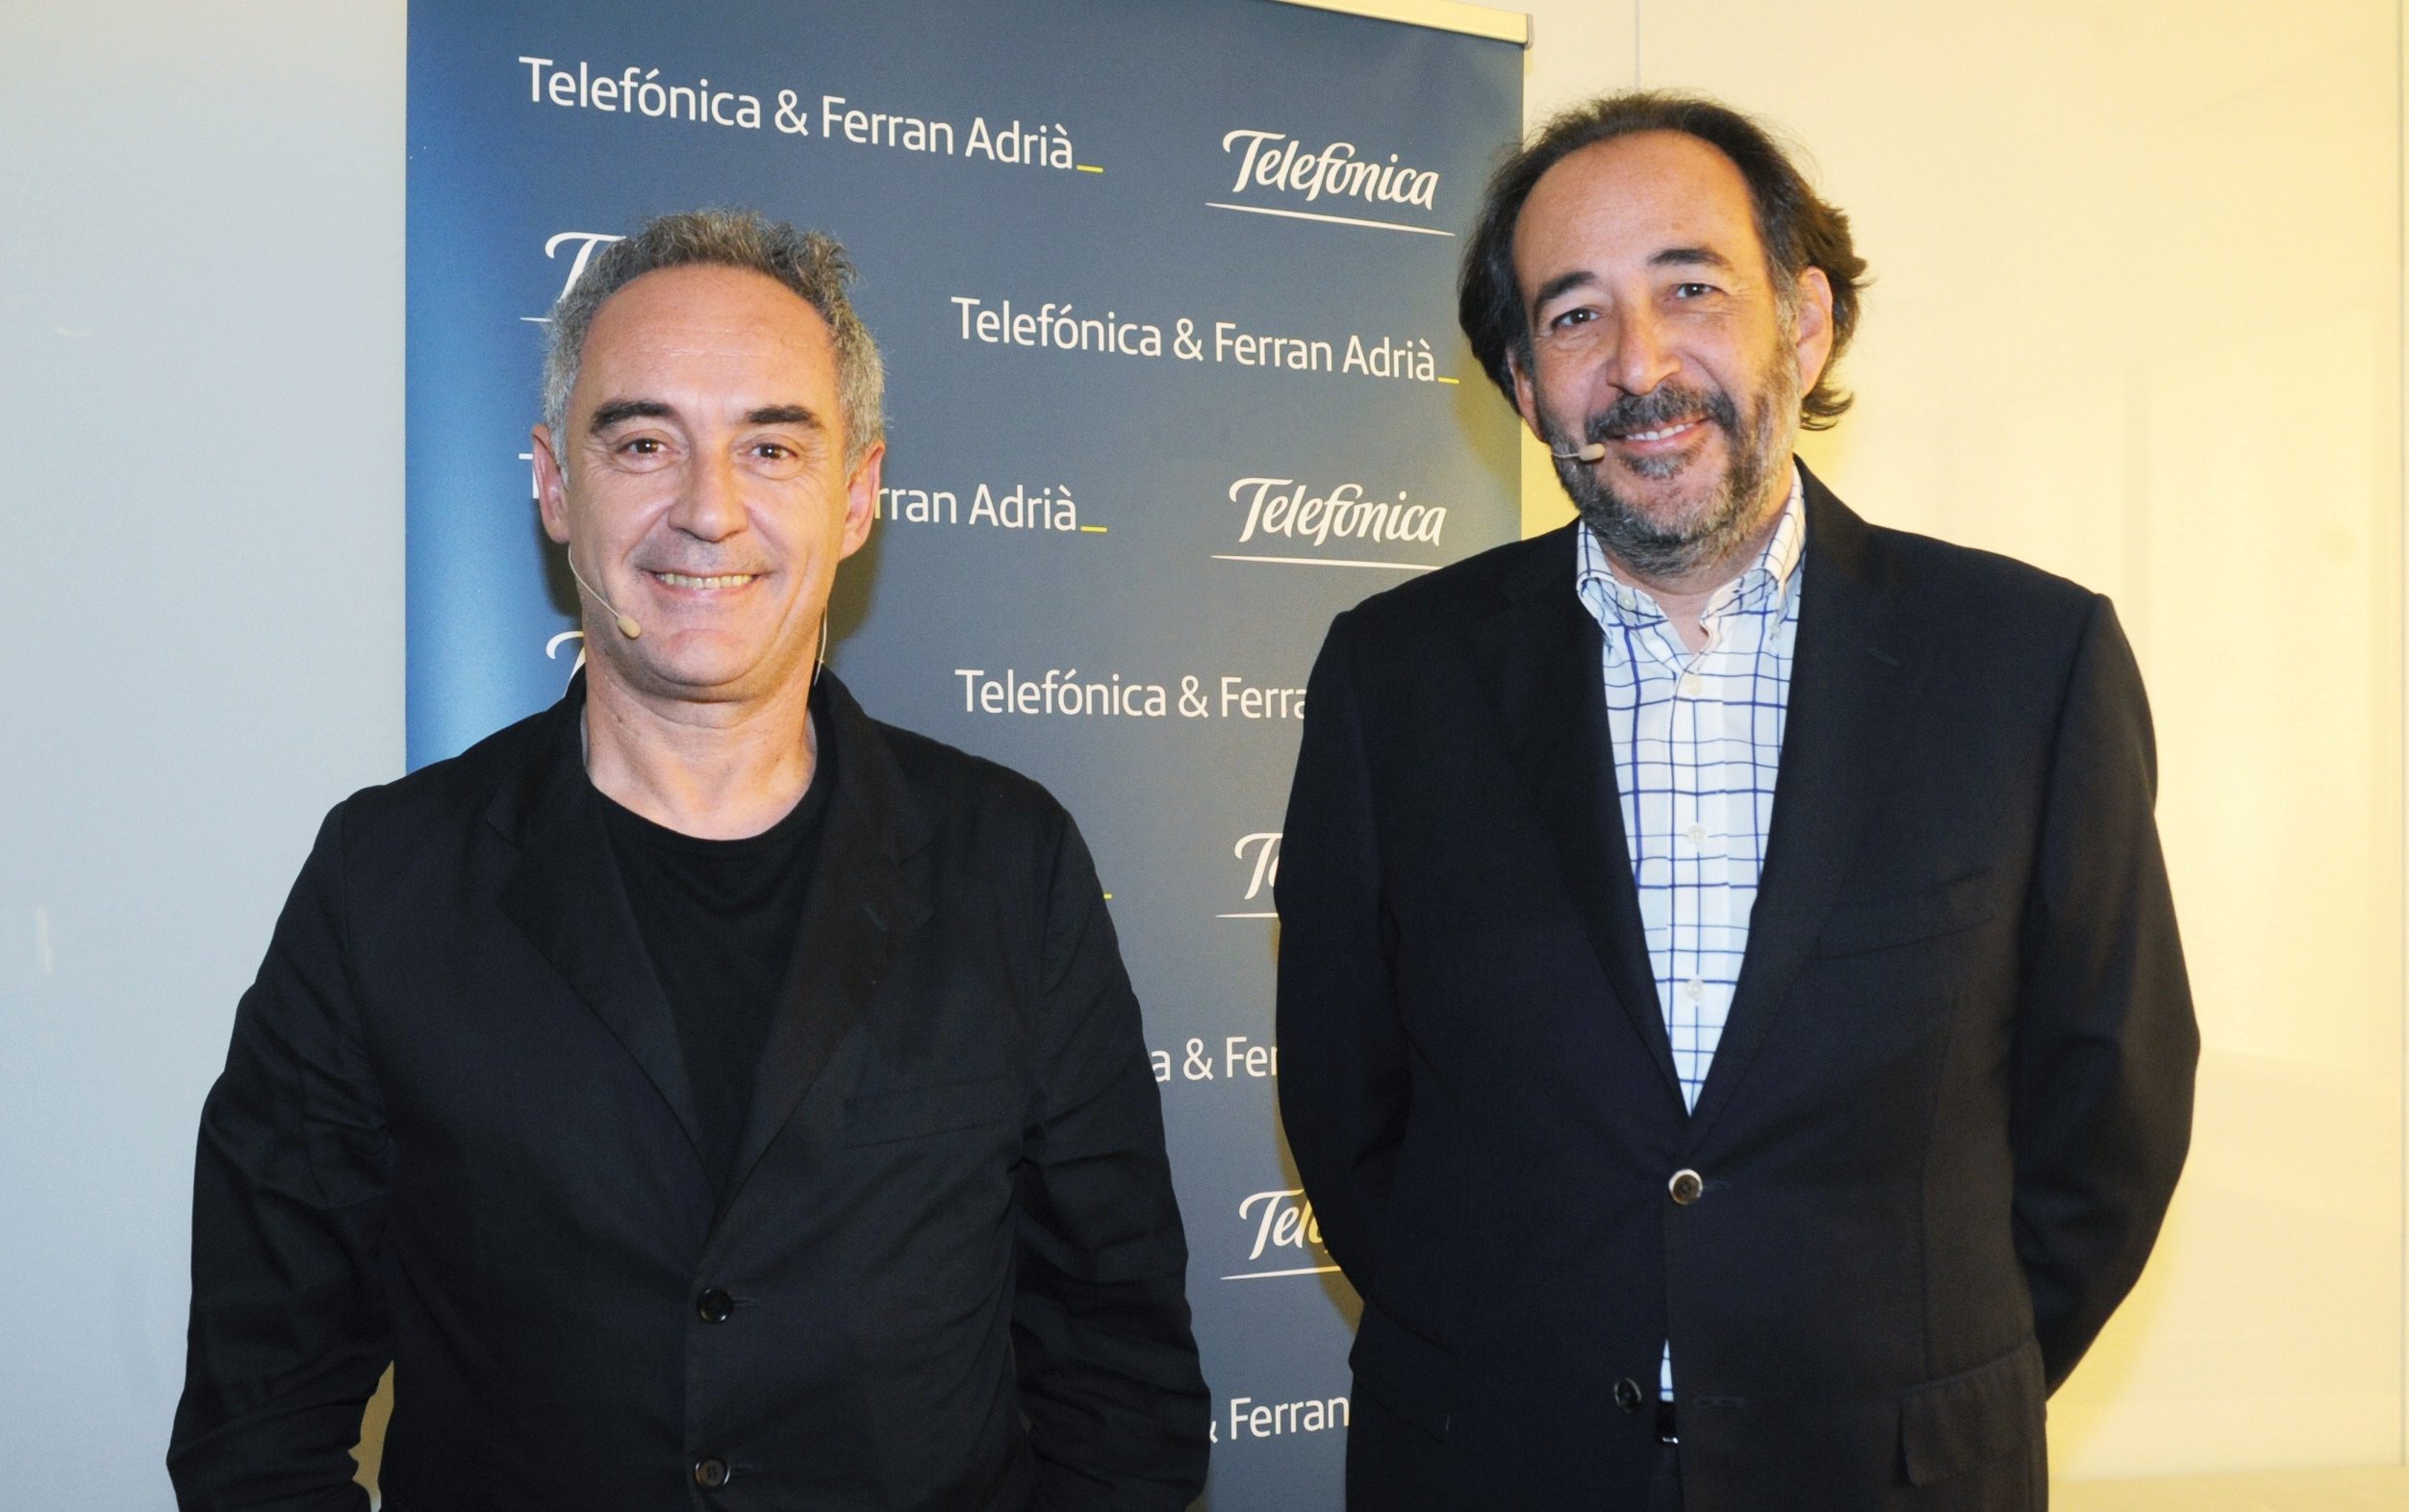 Telefonica renueva alianza con Ferran Adria